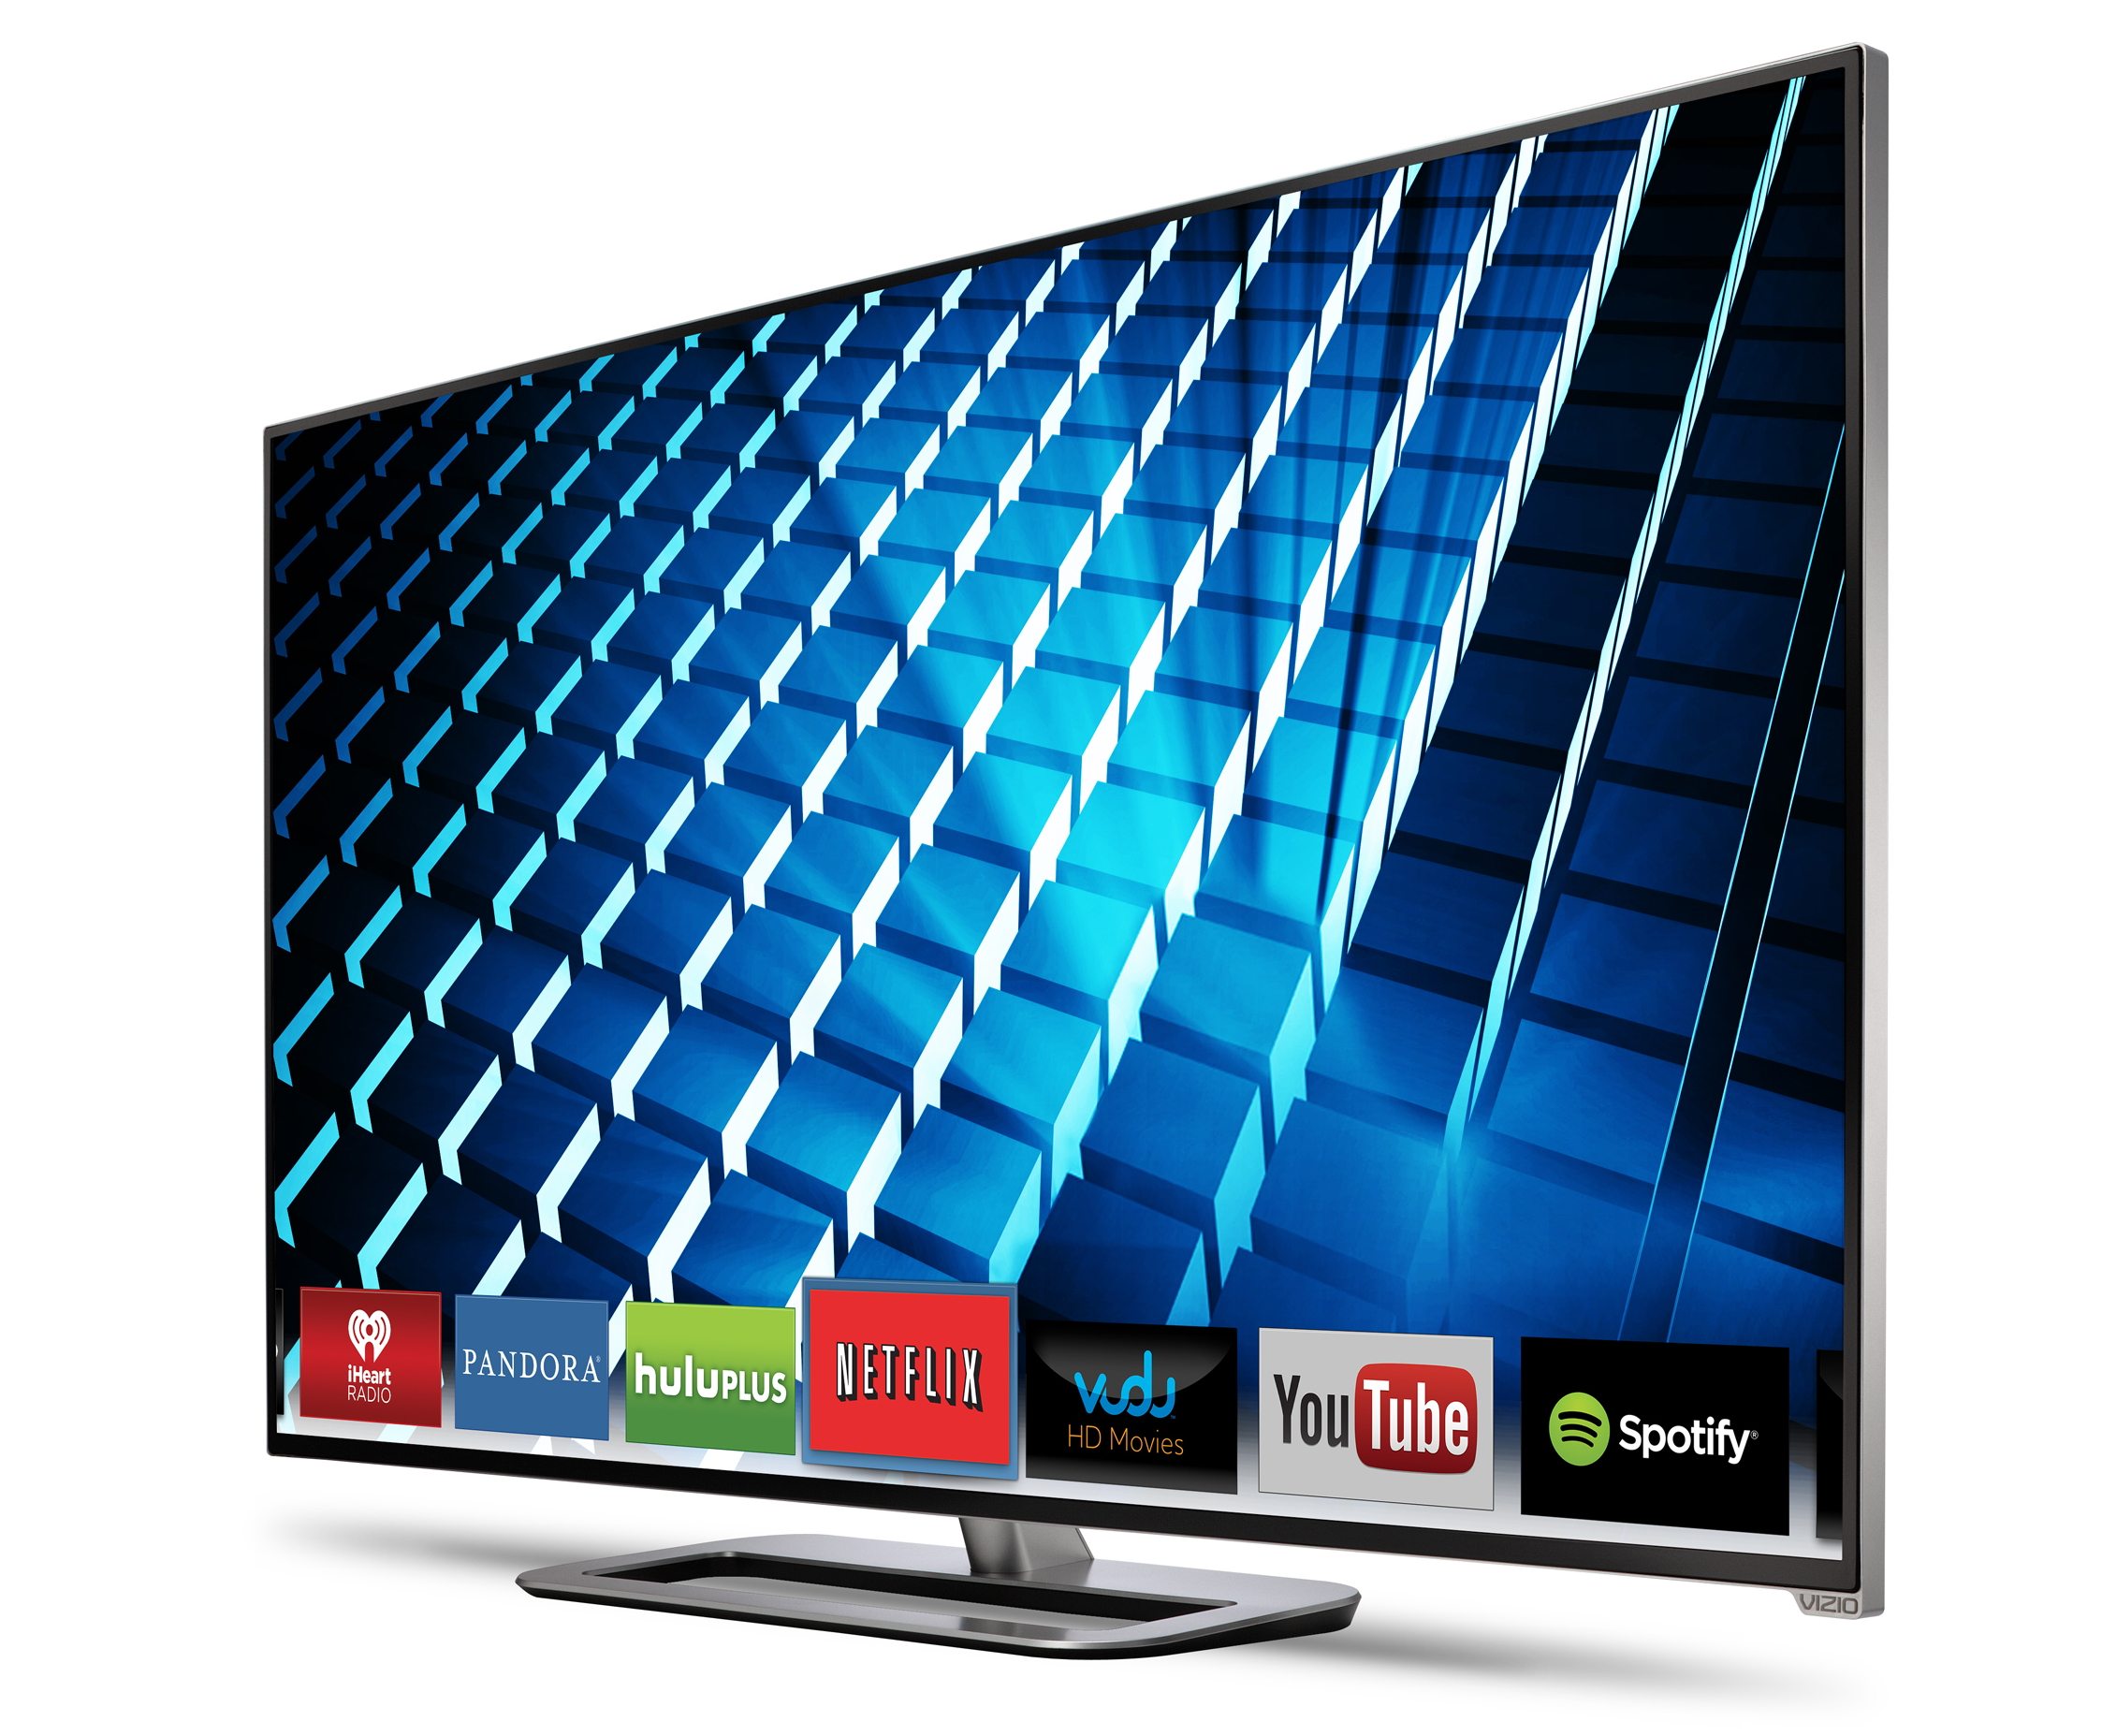 Vizio M422i 42″ M-Series Smart LED HDTV Review